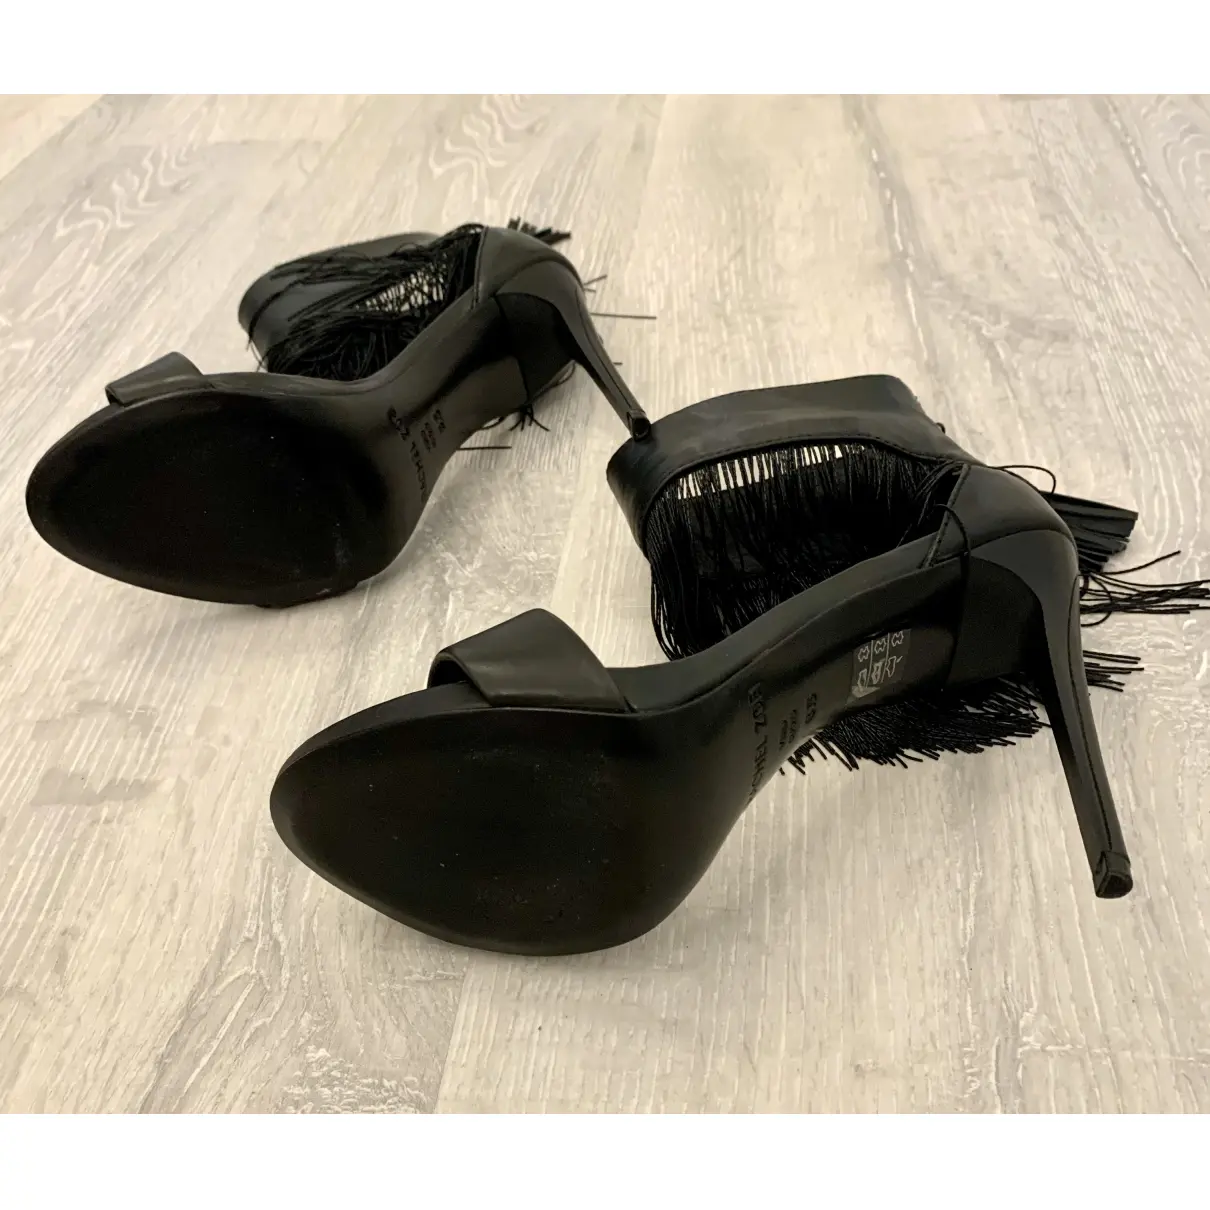 Leather sandals Rachel Zoe